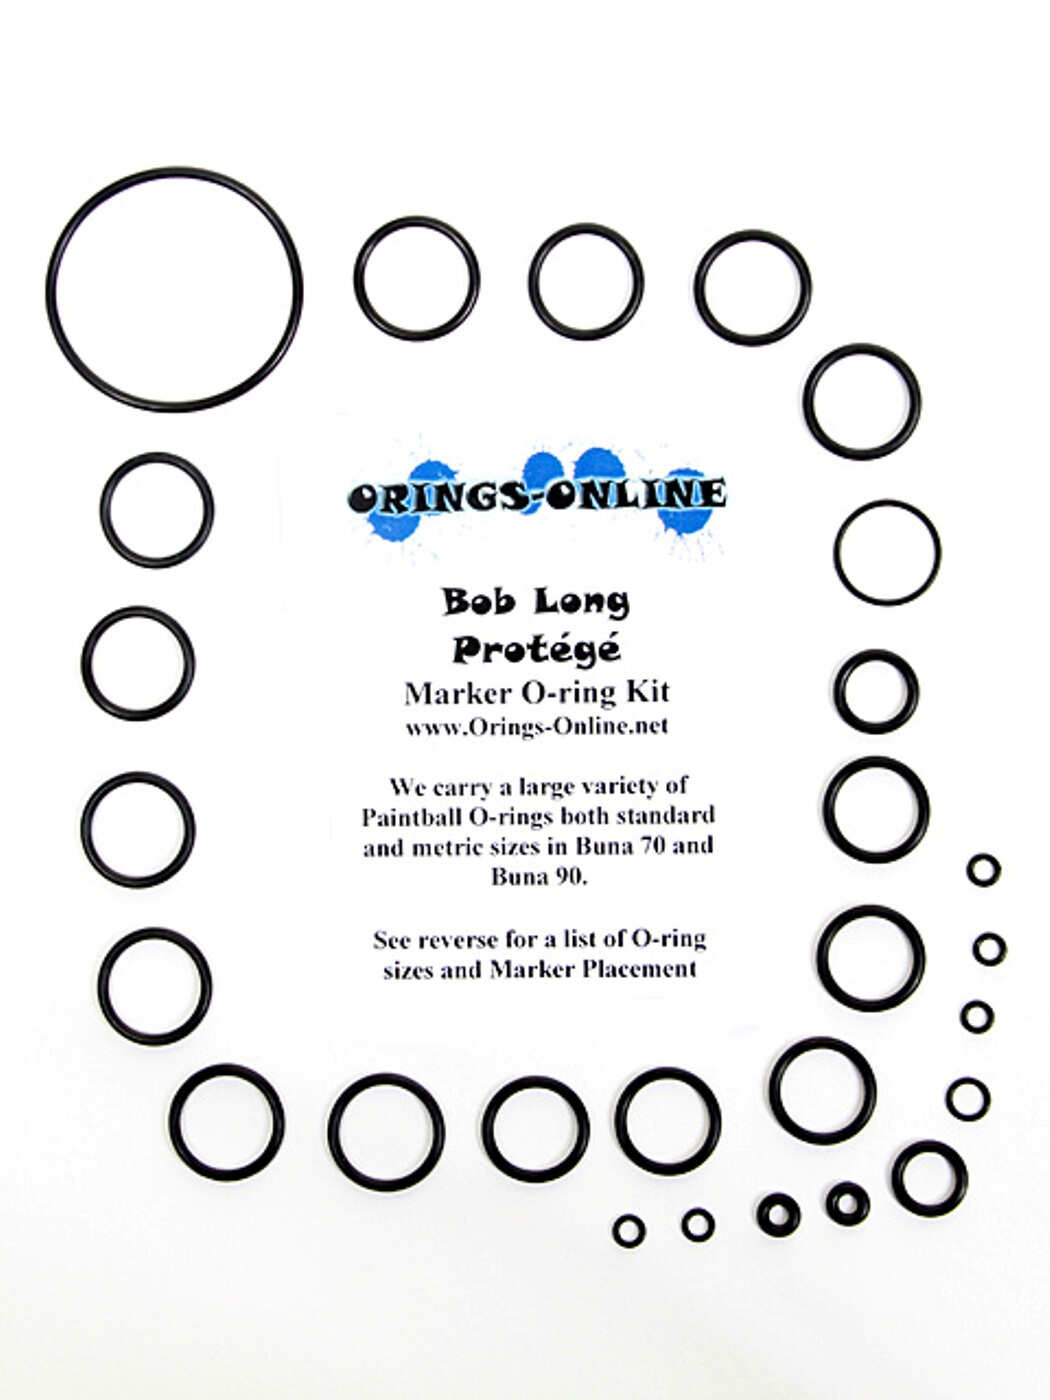 Bob Long Protege Marker O-ring Kit